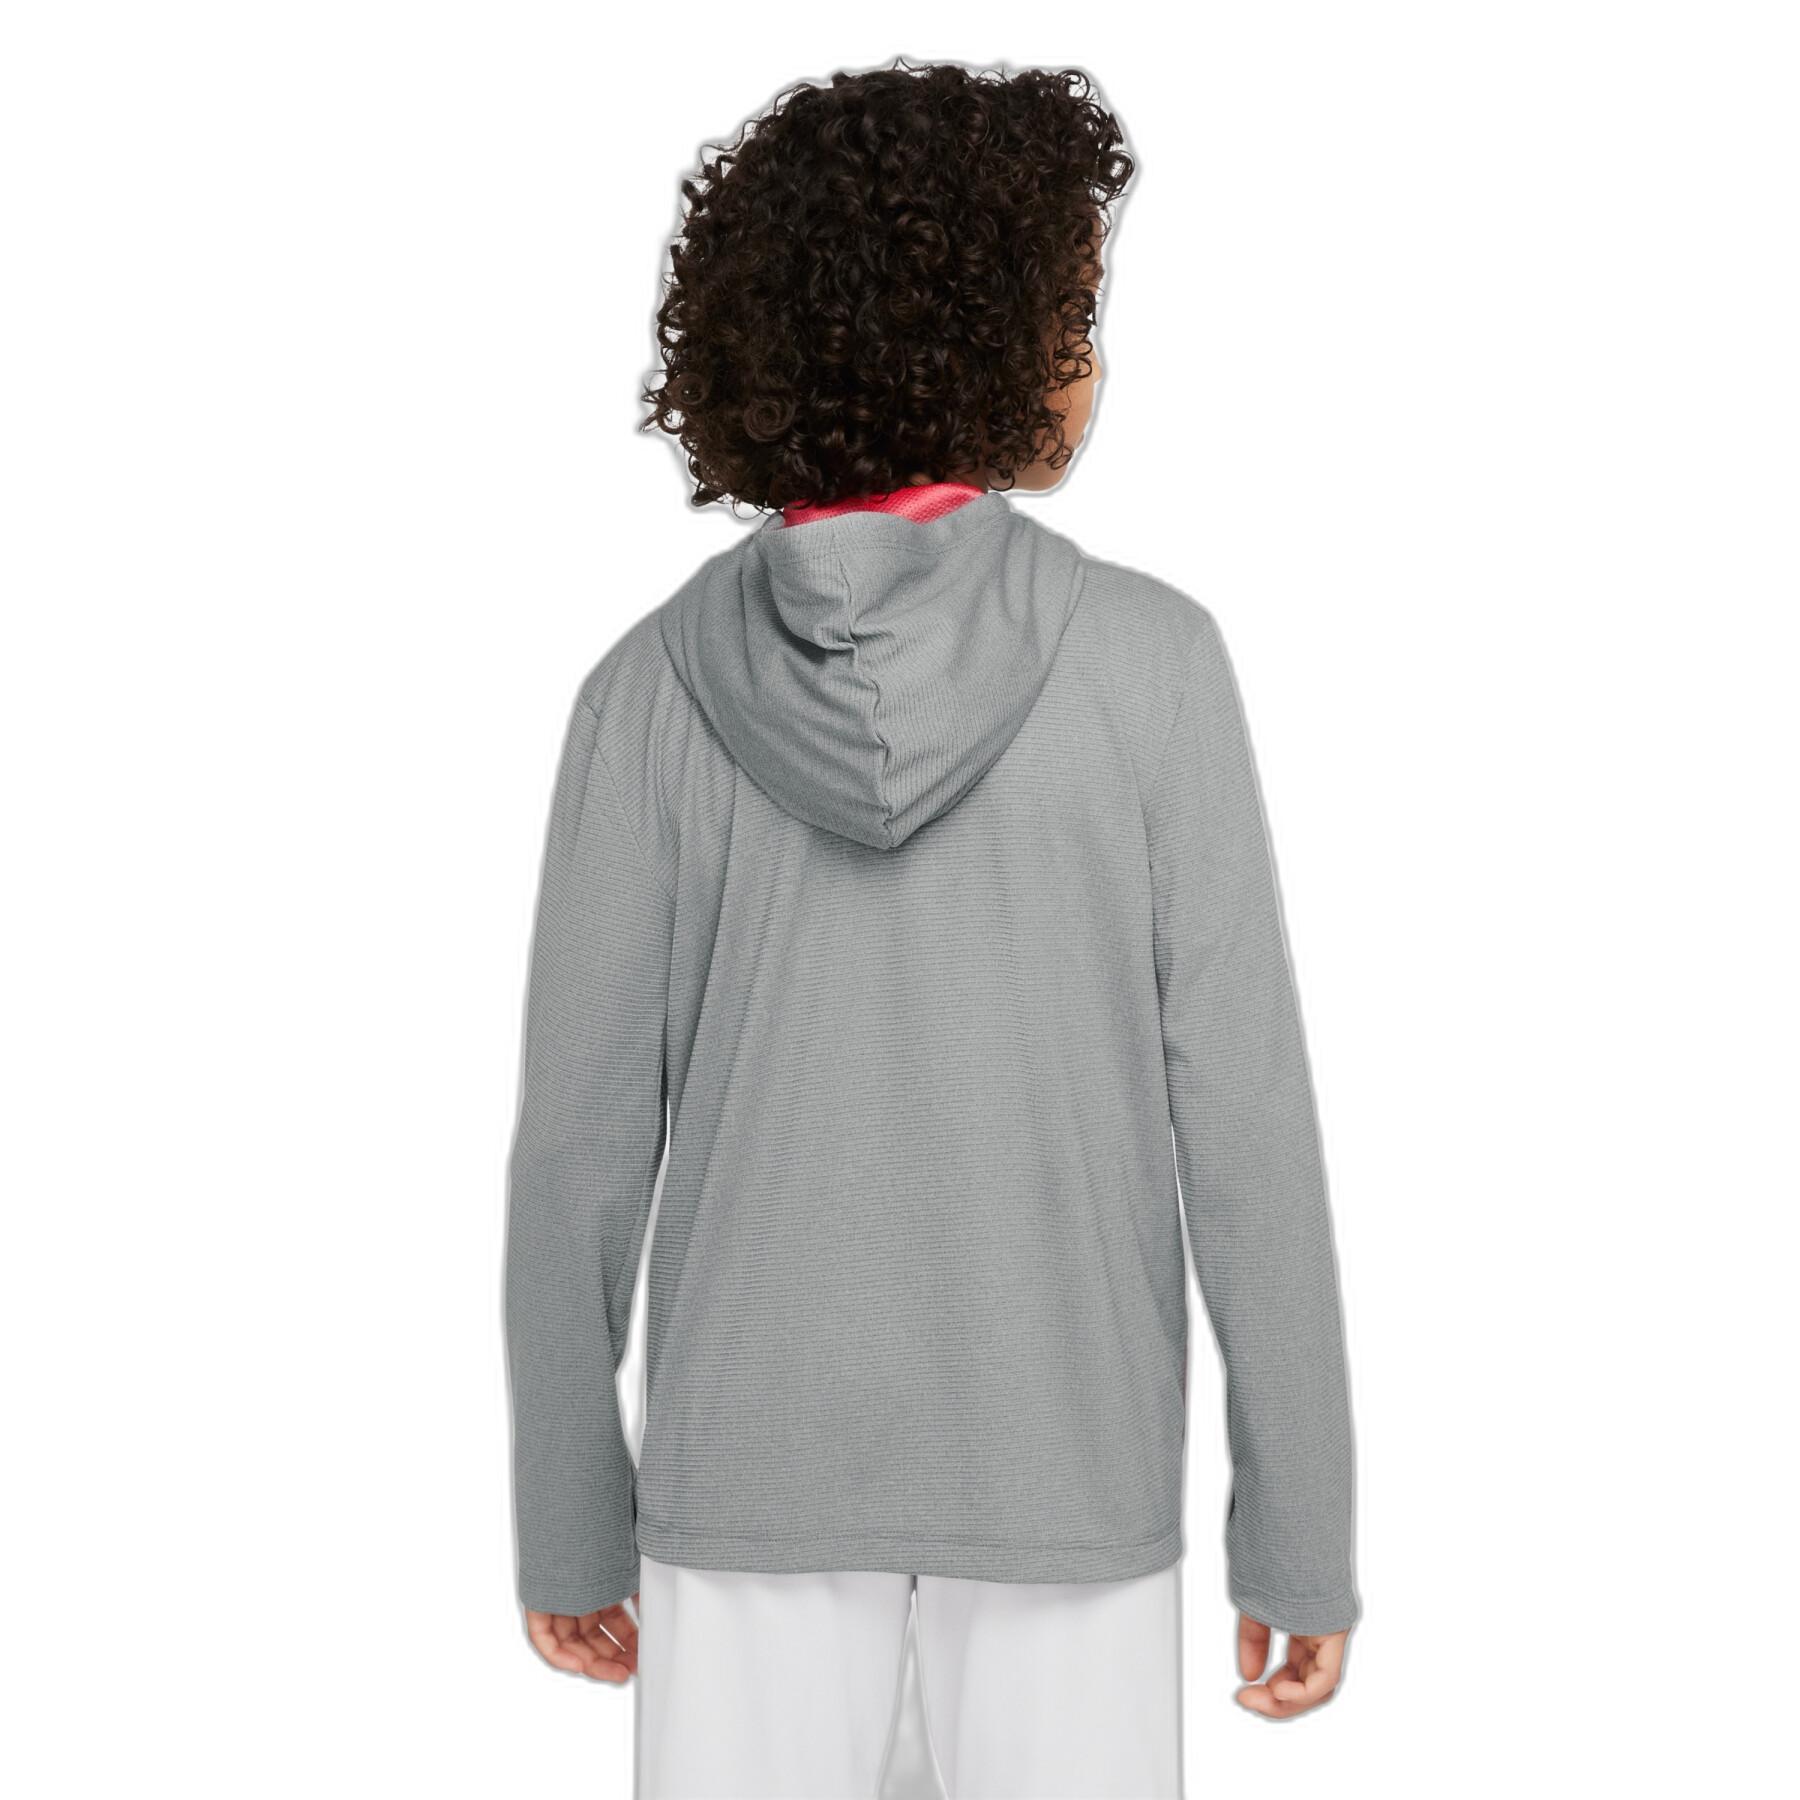 Hooded sweatshirt with zipper Nike Poly